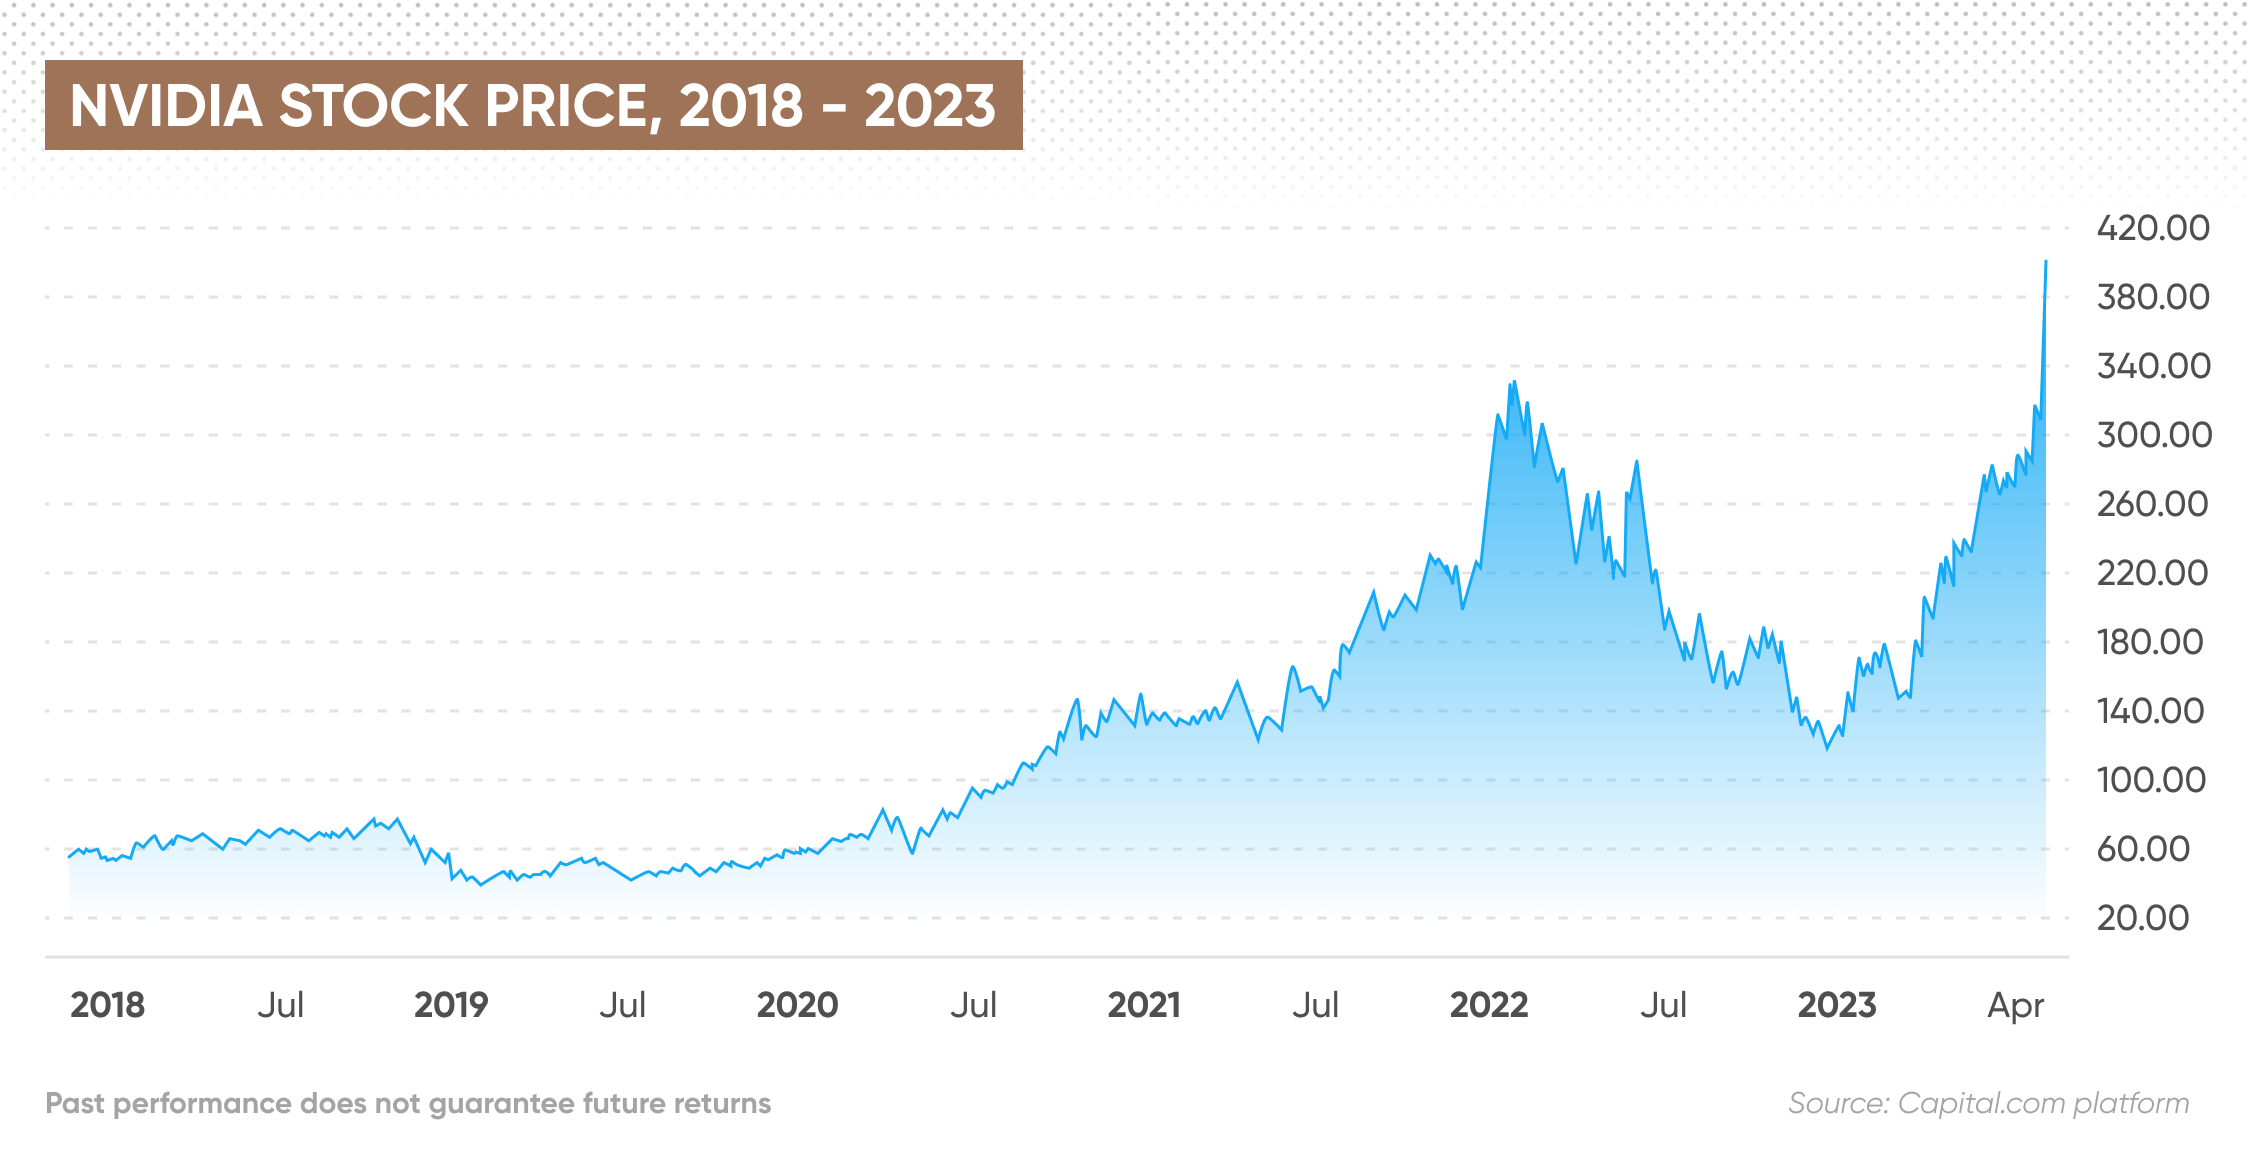 Nvidia stock price, 2018 - 2023